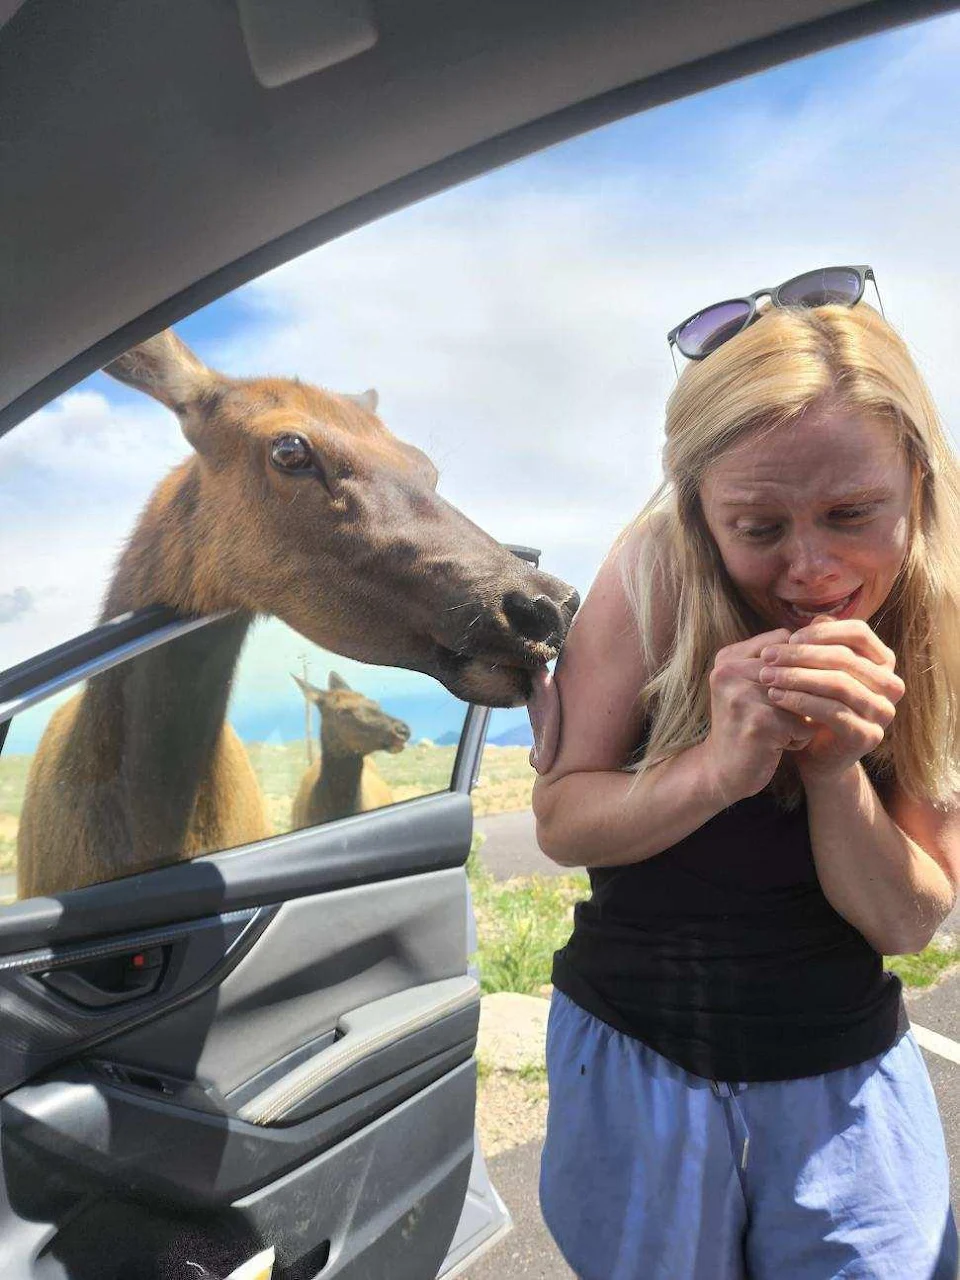 PsBattle: Woman getting licked by an elk.